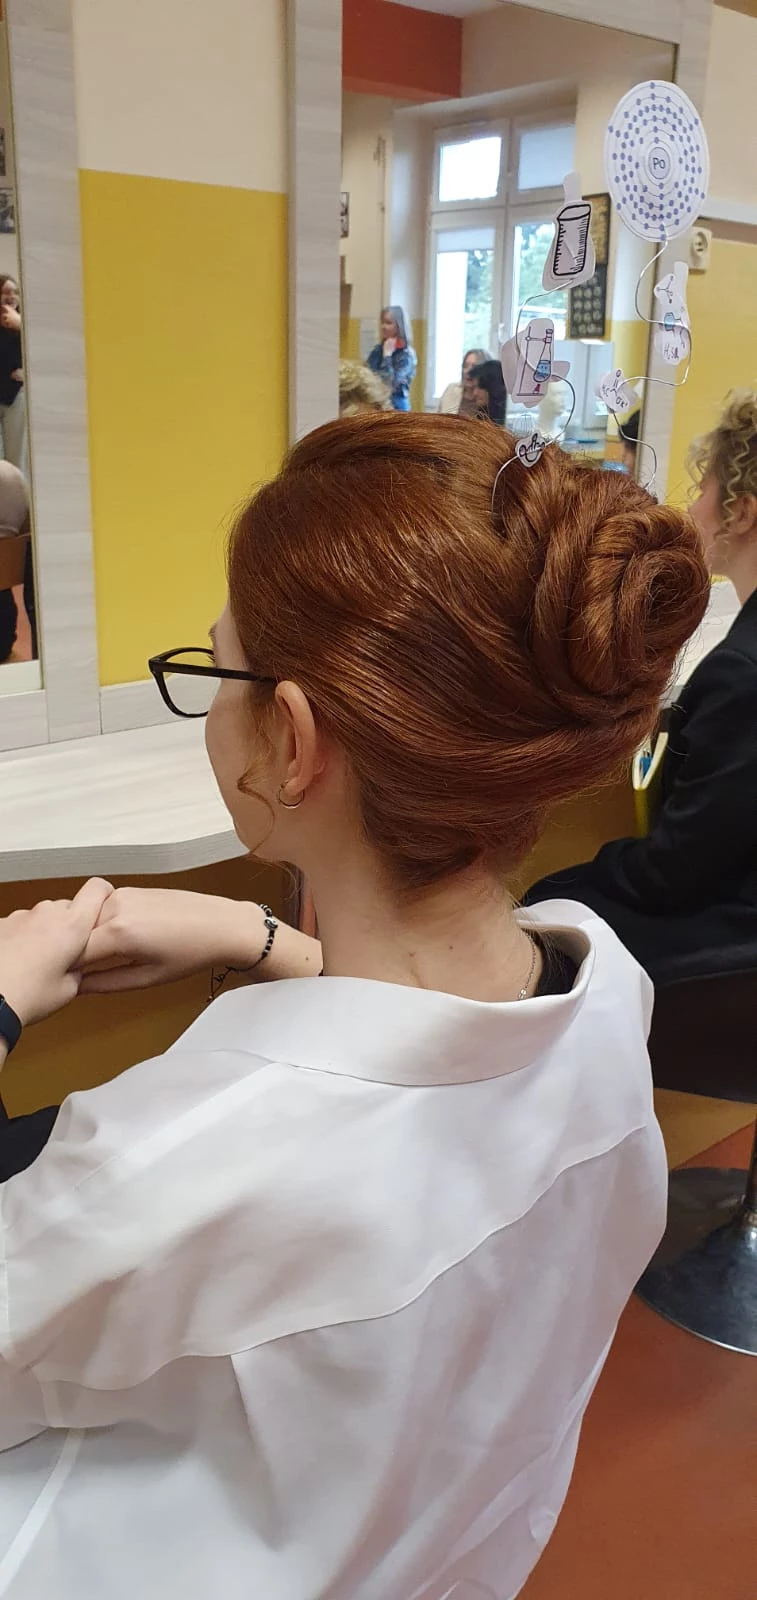 Złote nożyczki. Maria Skłodowska-Curie inspiracją dla młodych fryzjerek